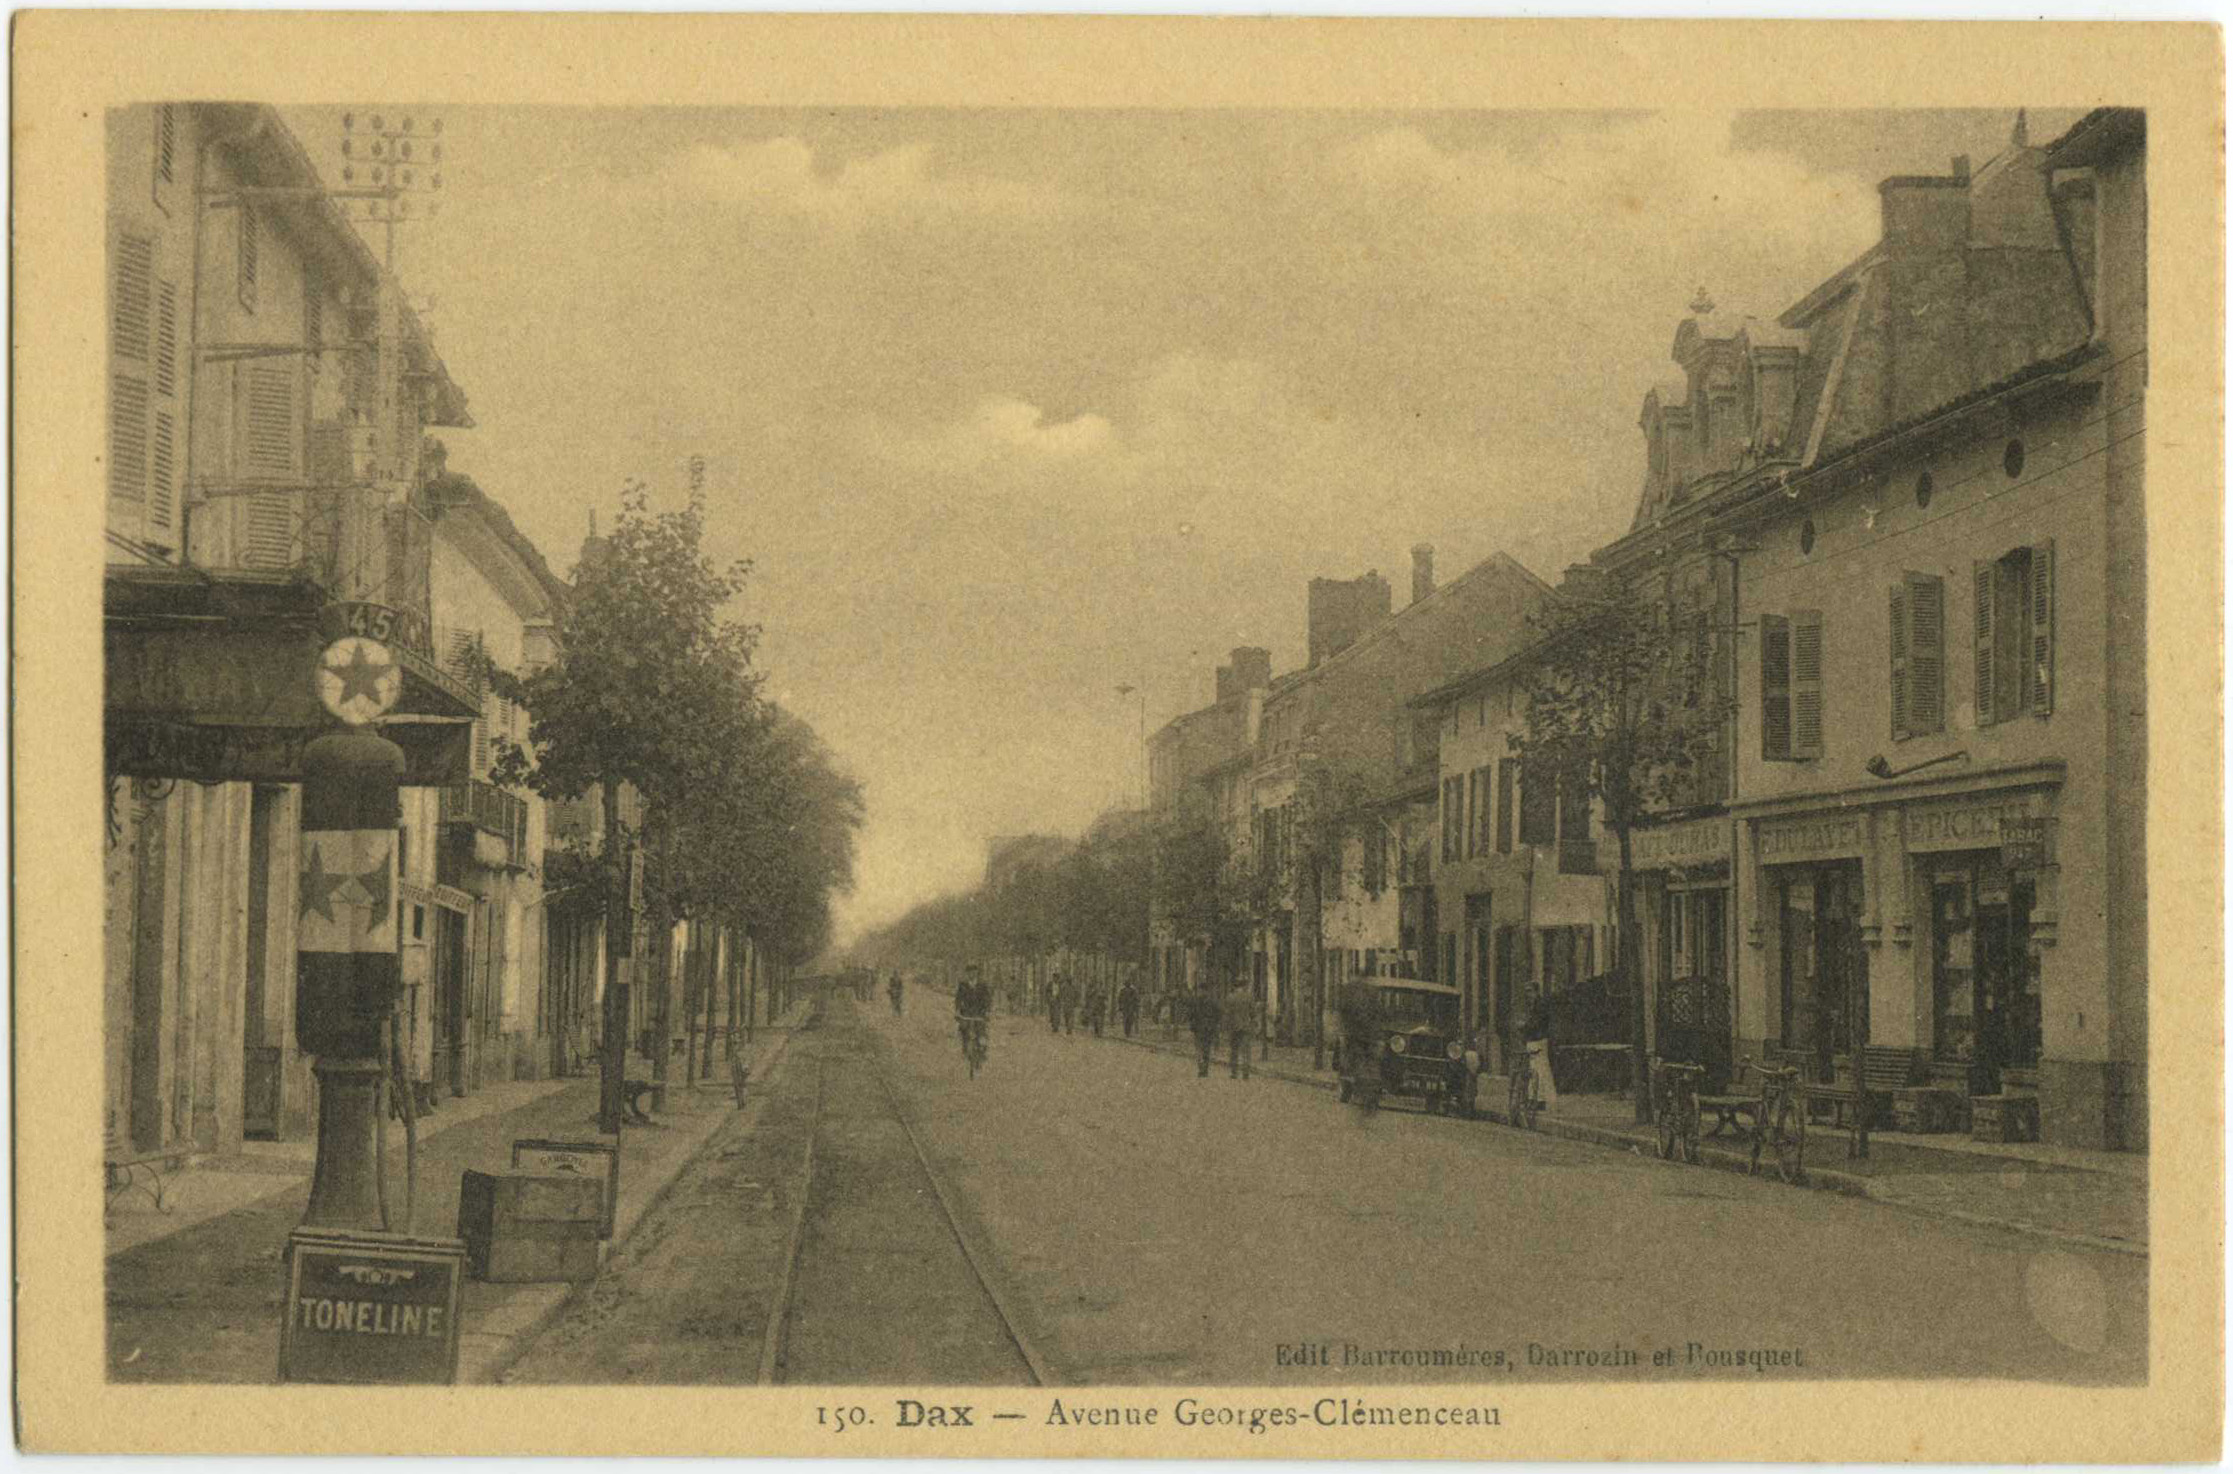 Dax - Avenue Georges-Clémenceau